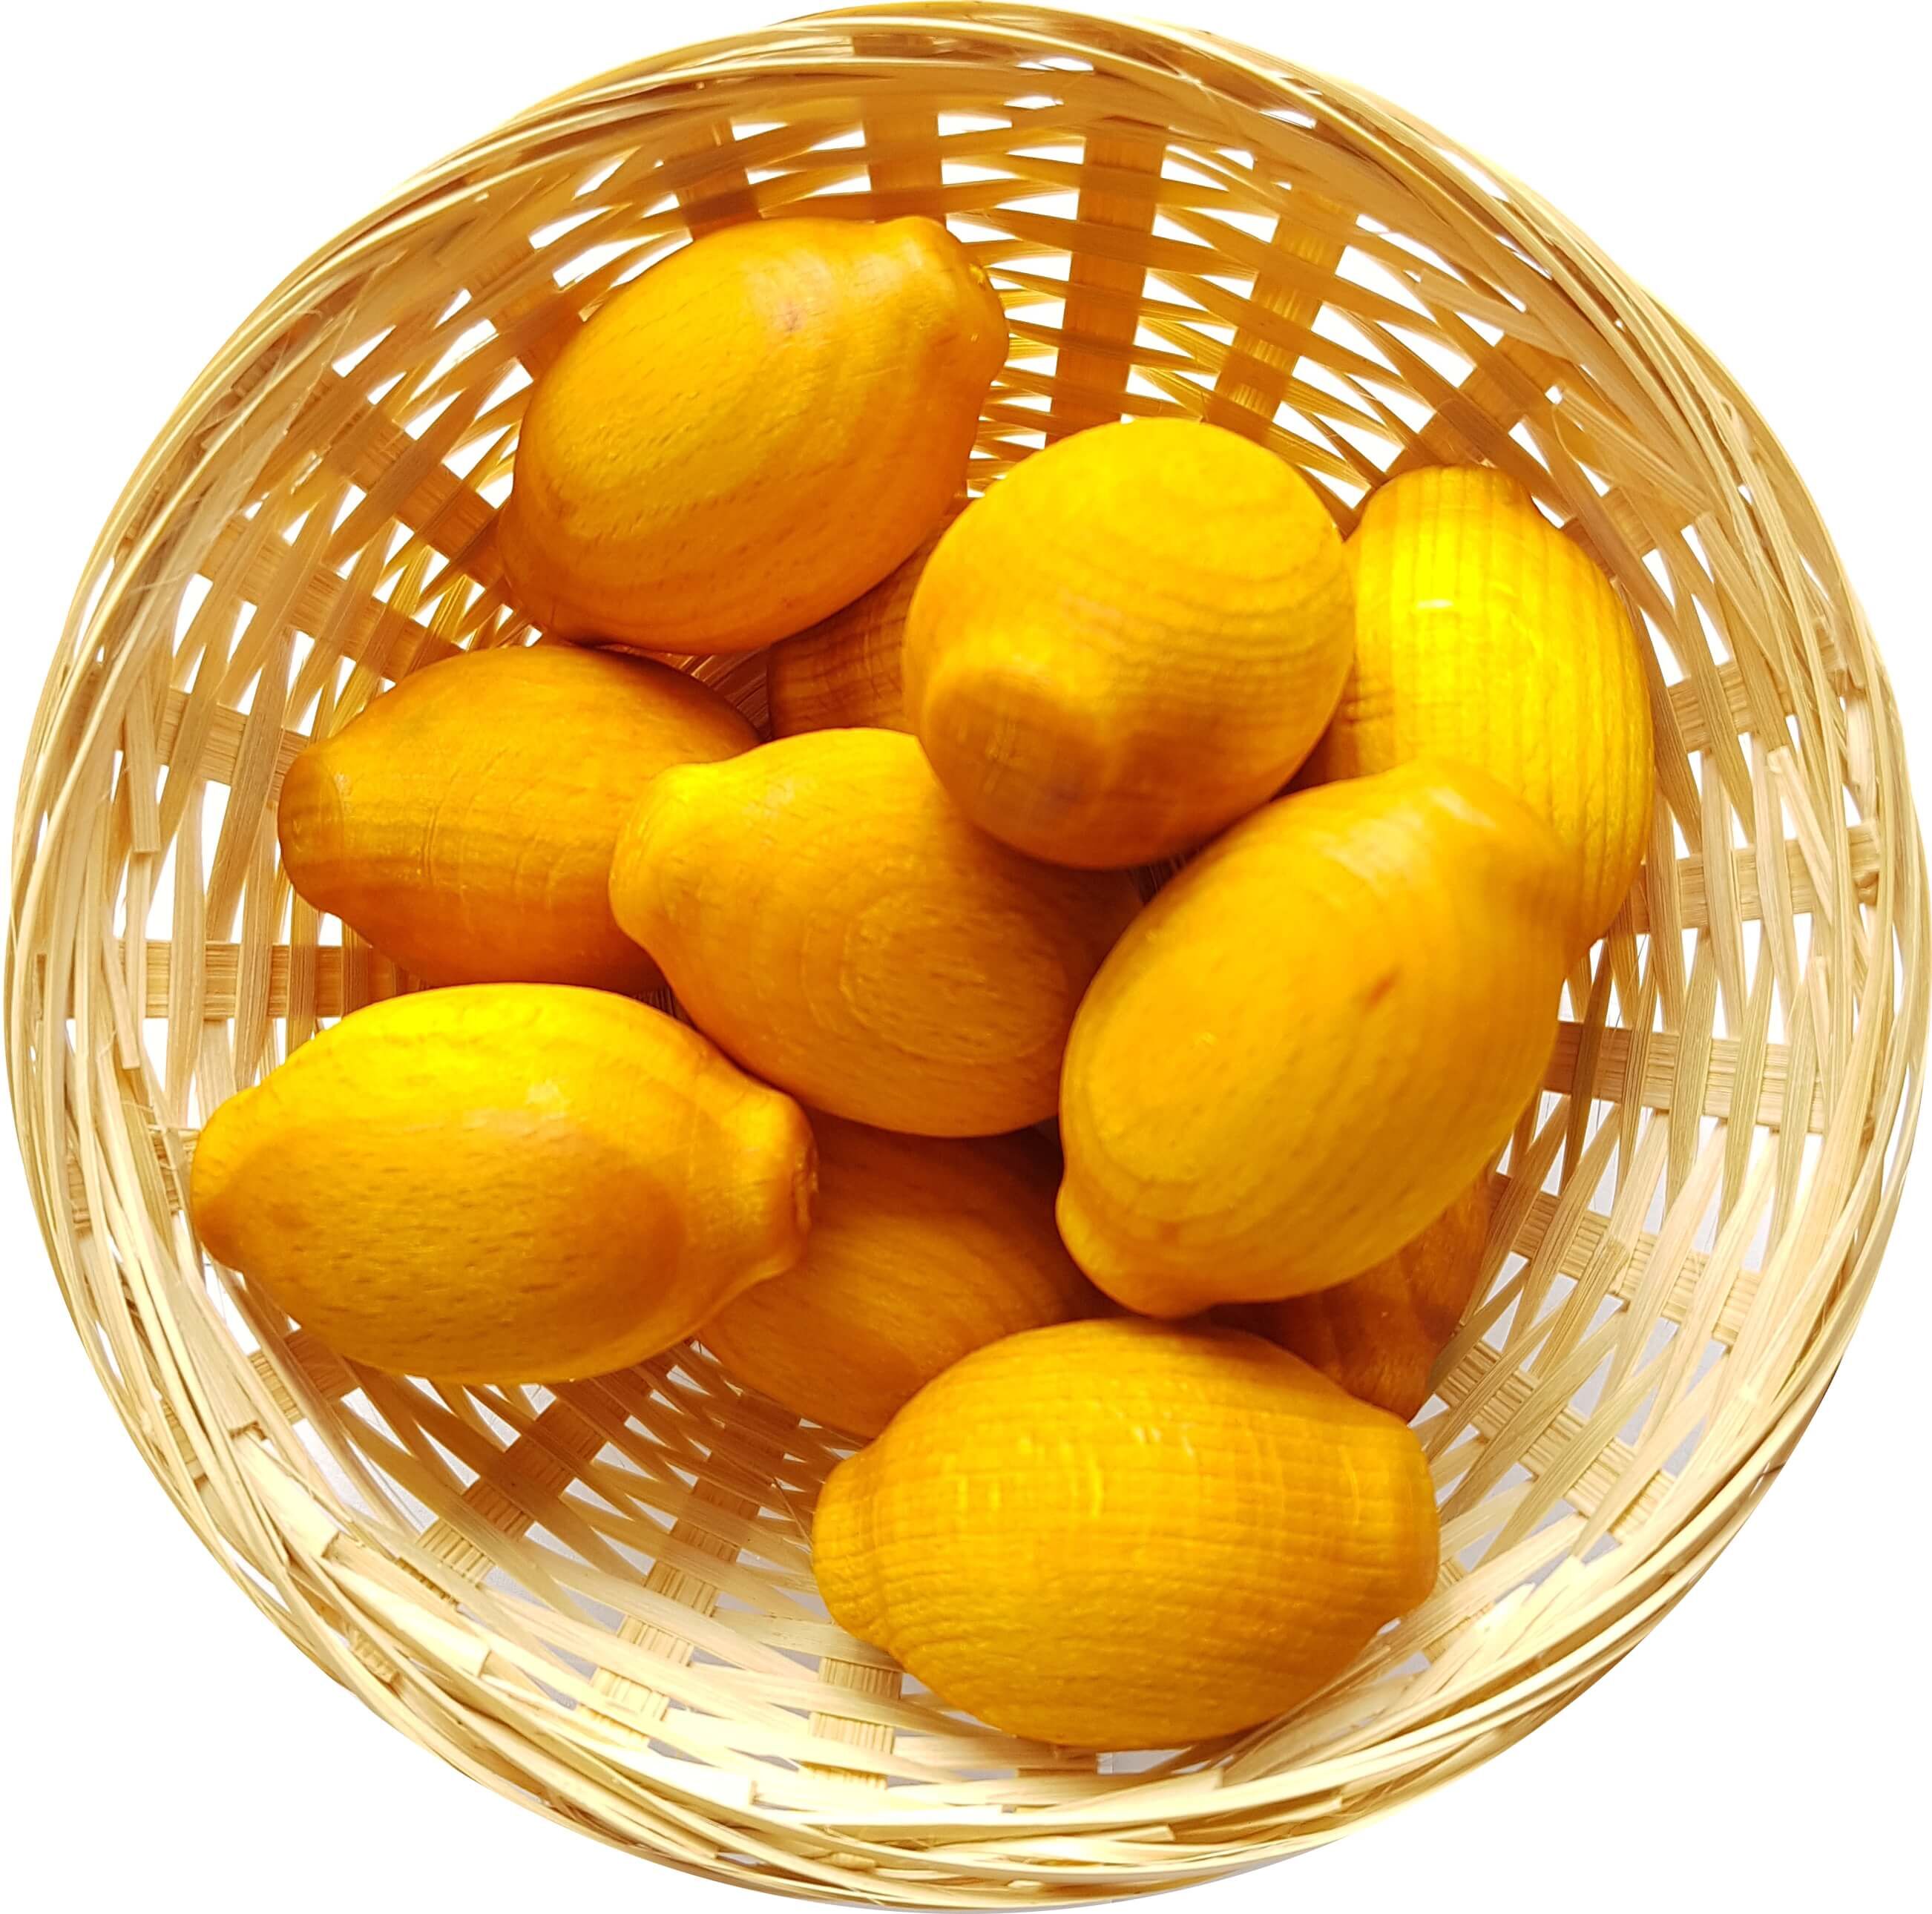 25x Zitrone Duftholz zur Lufterfrischung und Raumbeduftung - Dufthölzer - Duftfrüchte - Duftkugel